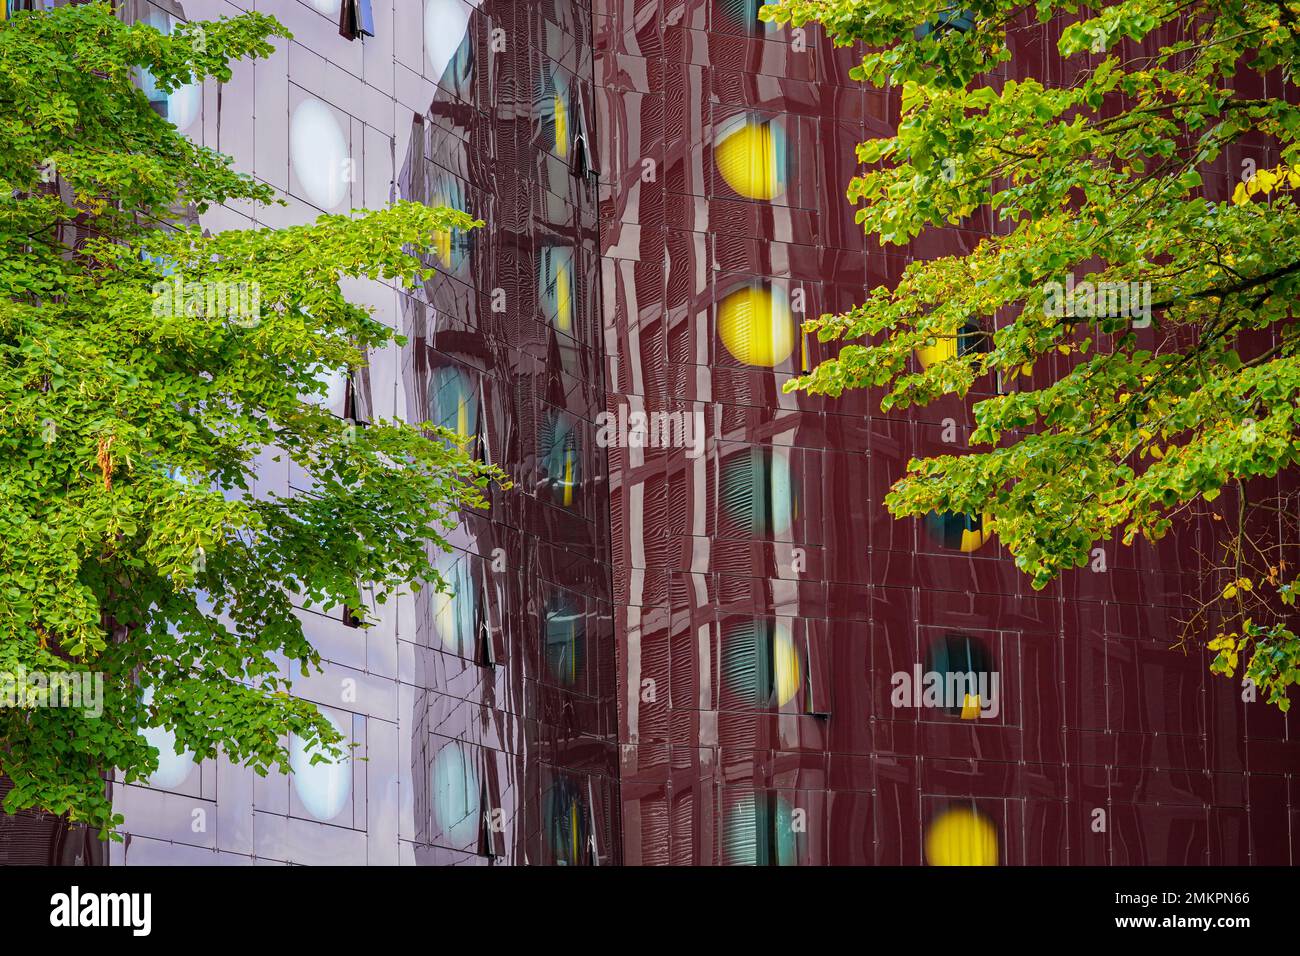 Réflexions d'un bâtiment dans la façade de l'hôtel ARCOTEL Onyx sur la Reeperbahn à Hambourg. Le mur-rideau en verre ressemble à un cristal noir Onyx. Banque D'Images